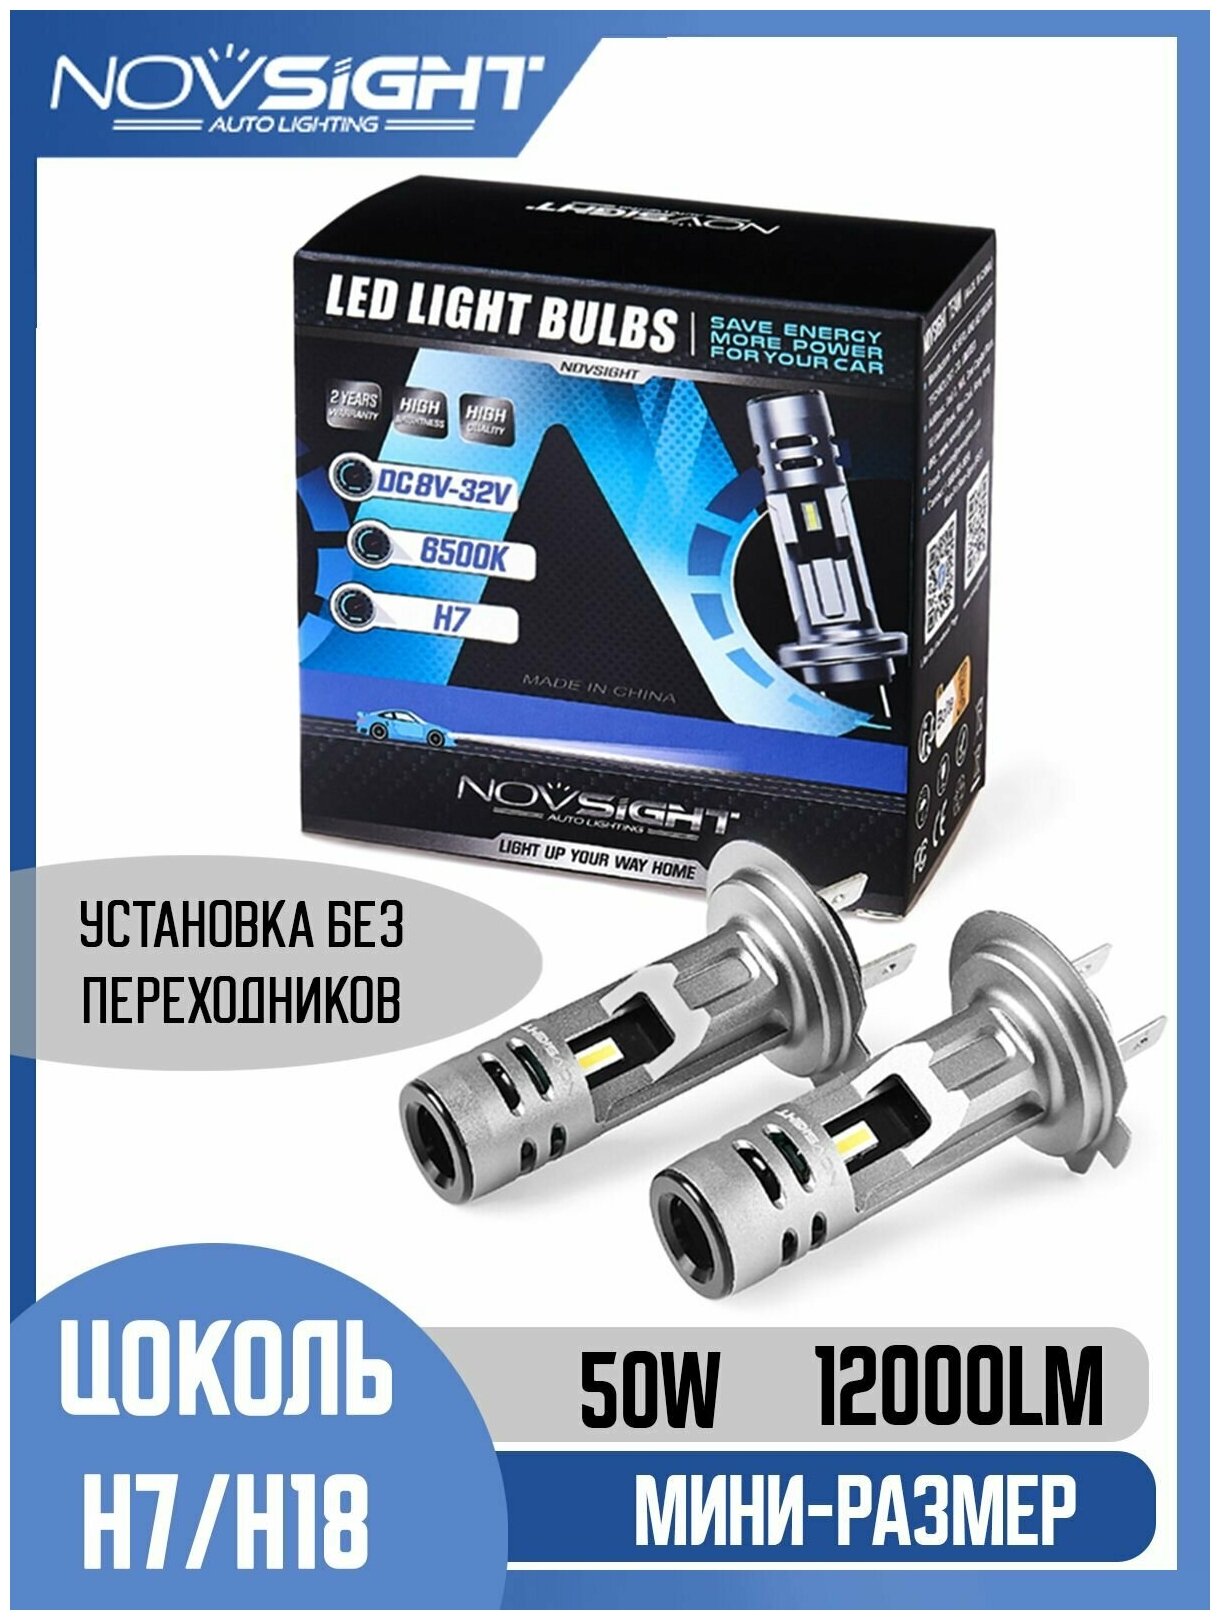 Светодиодная лампа Novsight N58 H18 цоколь PY26d-1 50Вт 2шт 6000К 12000Лм мини размер белый свет LED автомобильная